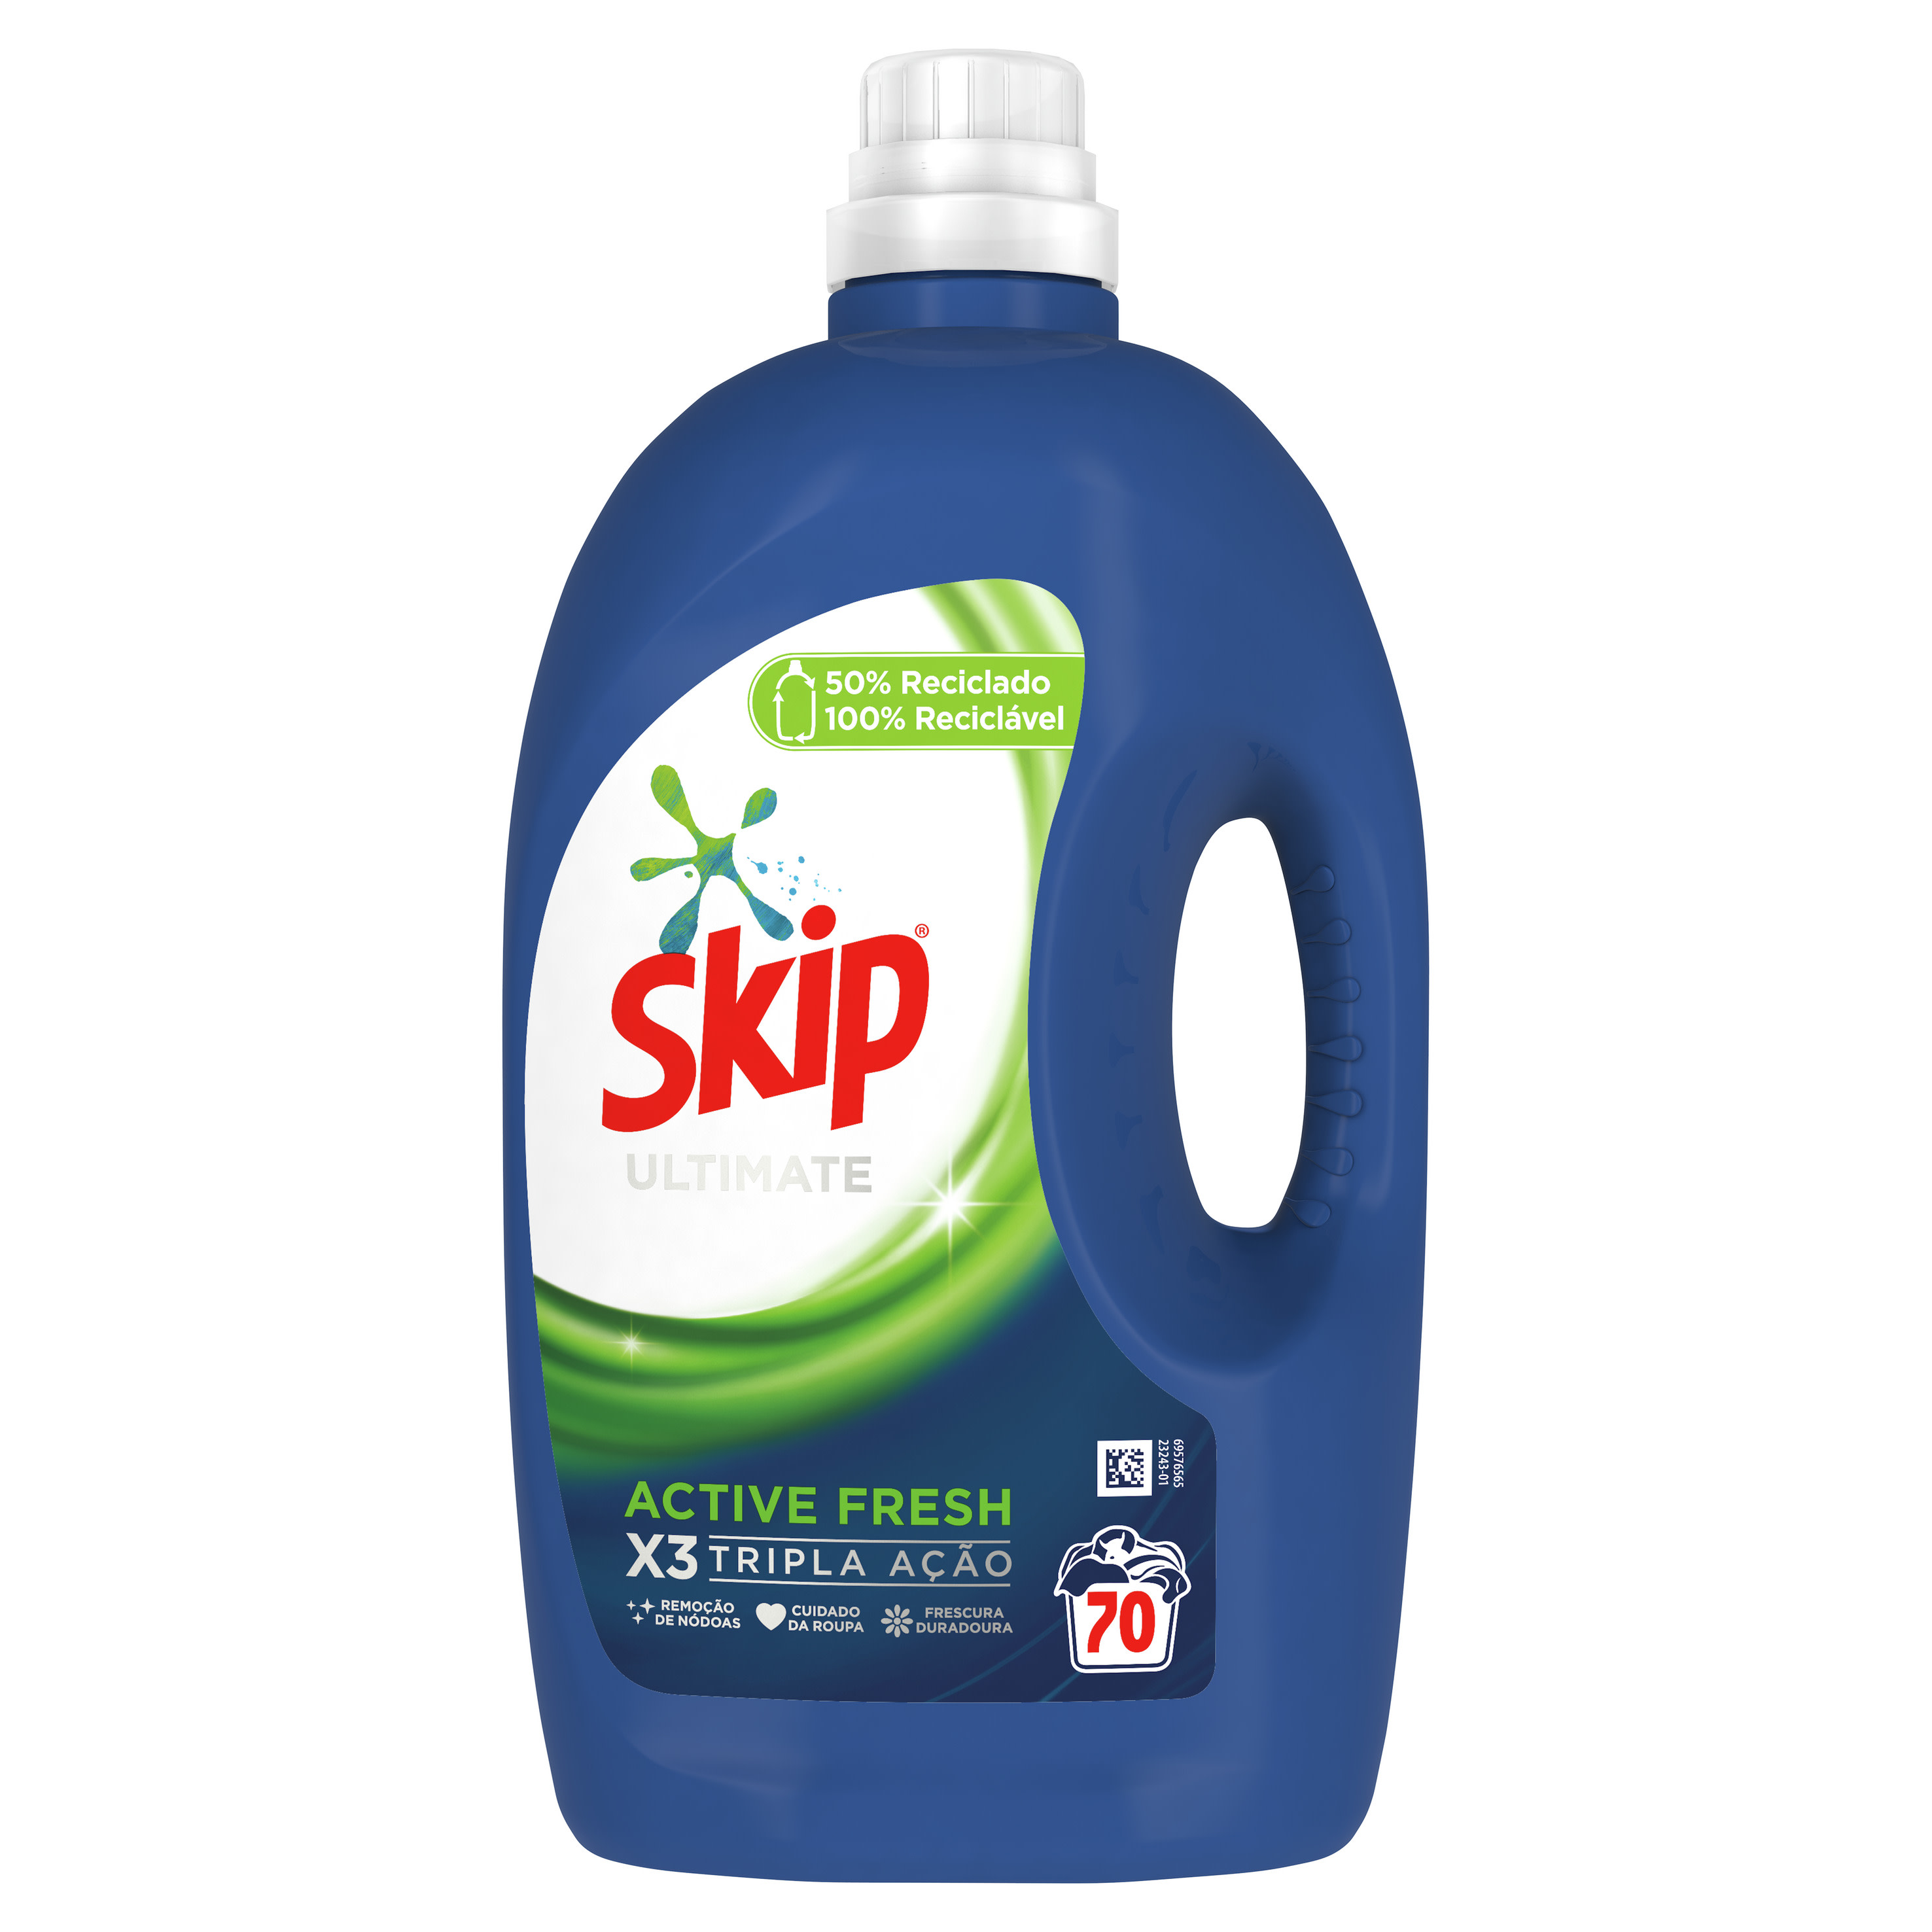 SKIP Detergente Líquido Ultimate Active Fresh packshot